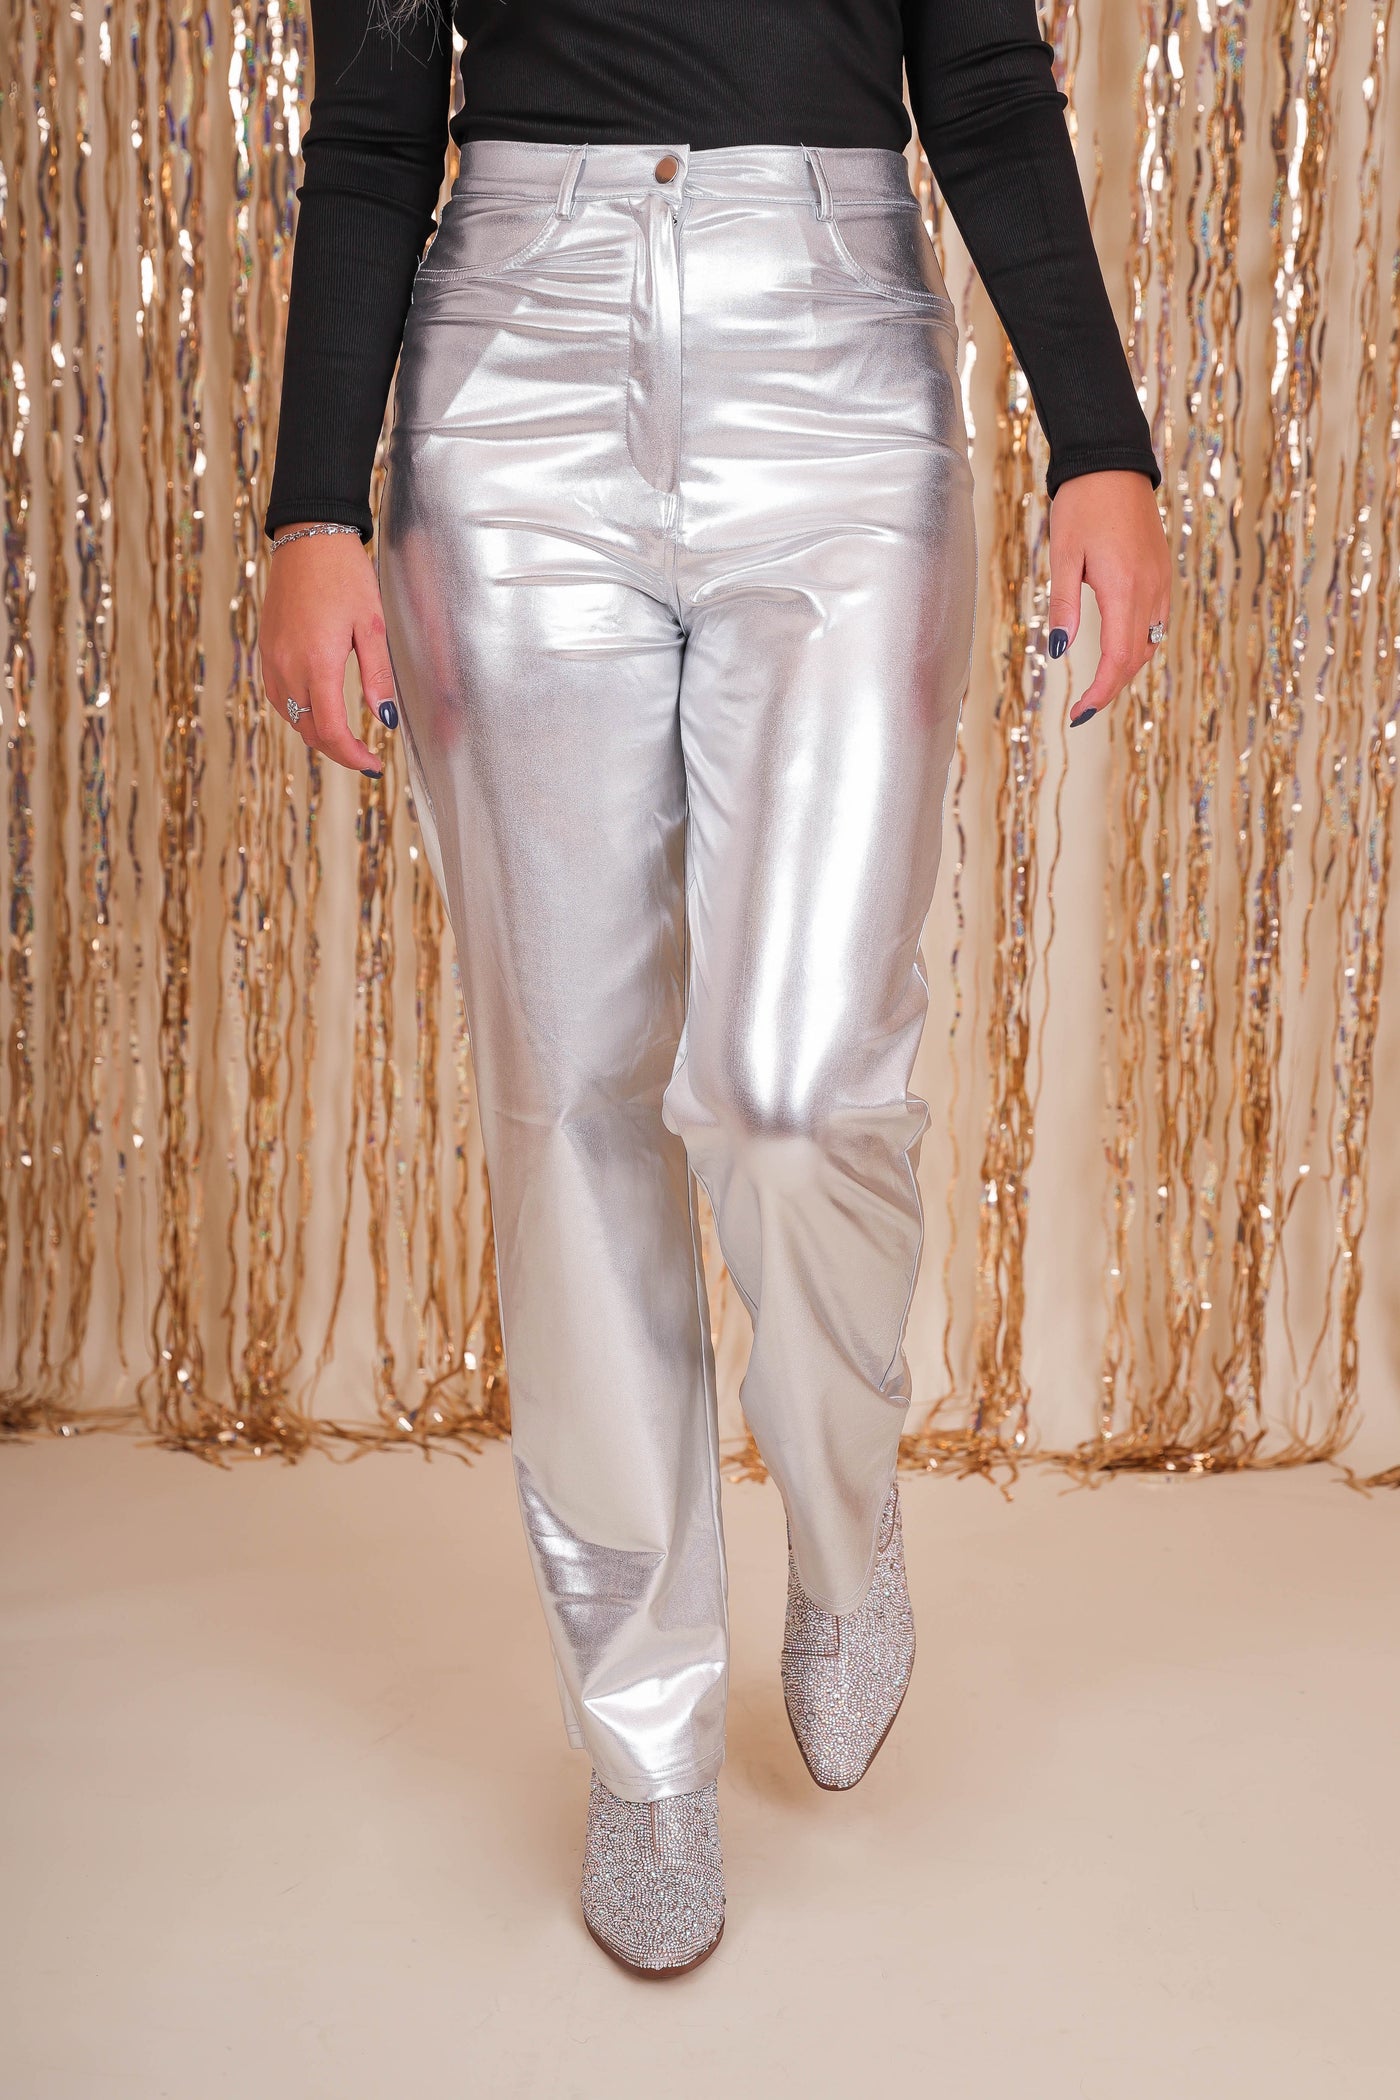 Women's Silver Metallic Pants- 2000s Style Silver Pants- 